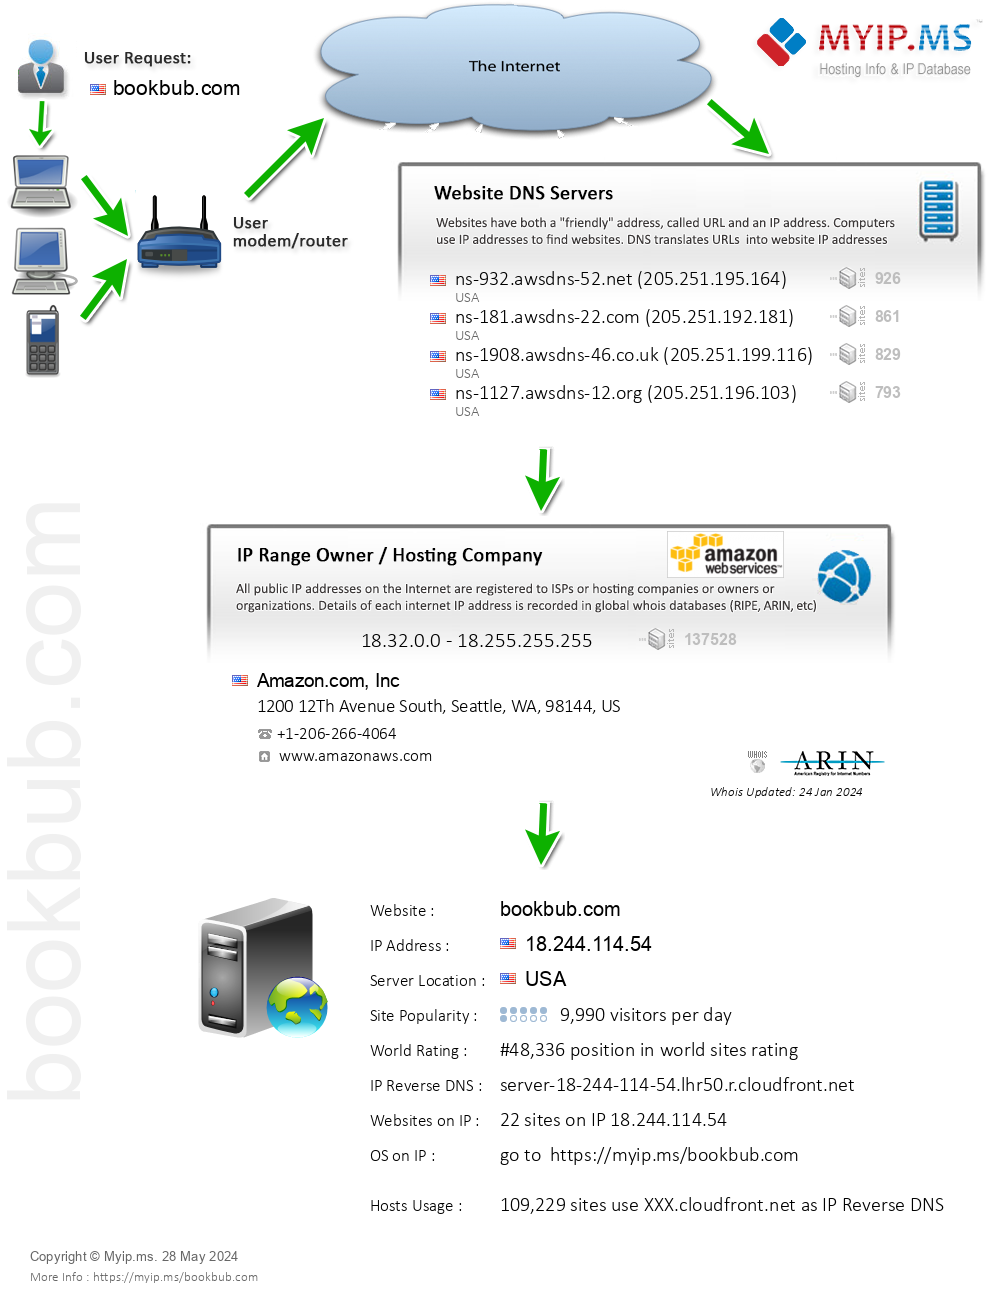 Bookbub.com - Website Hosting Visual IP Diagram